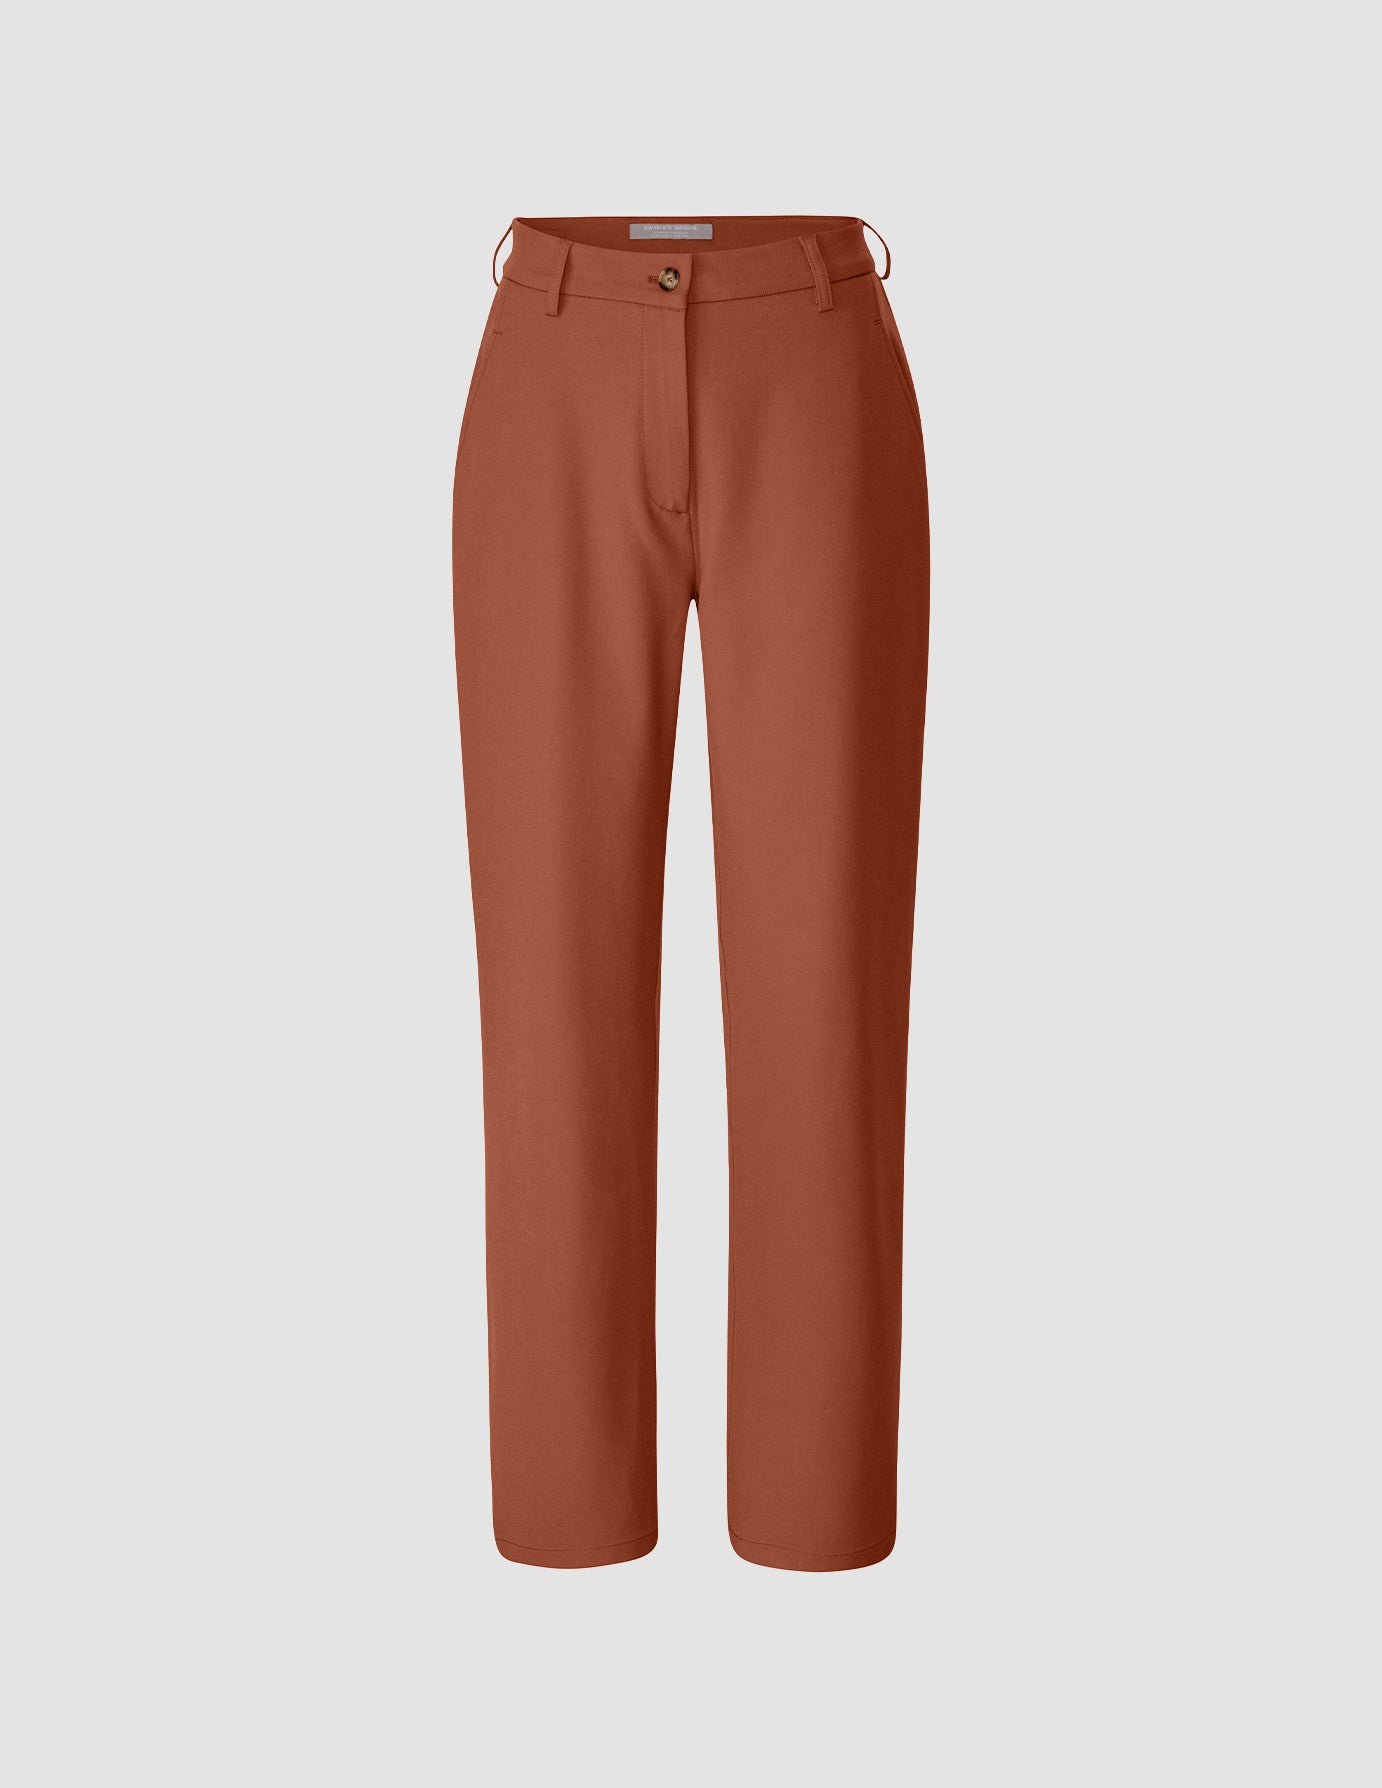 Womens Wide Leg Loose Fit Linen Trousers Tie Up Terracotta Size 8 10 14 |  eBay